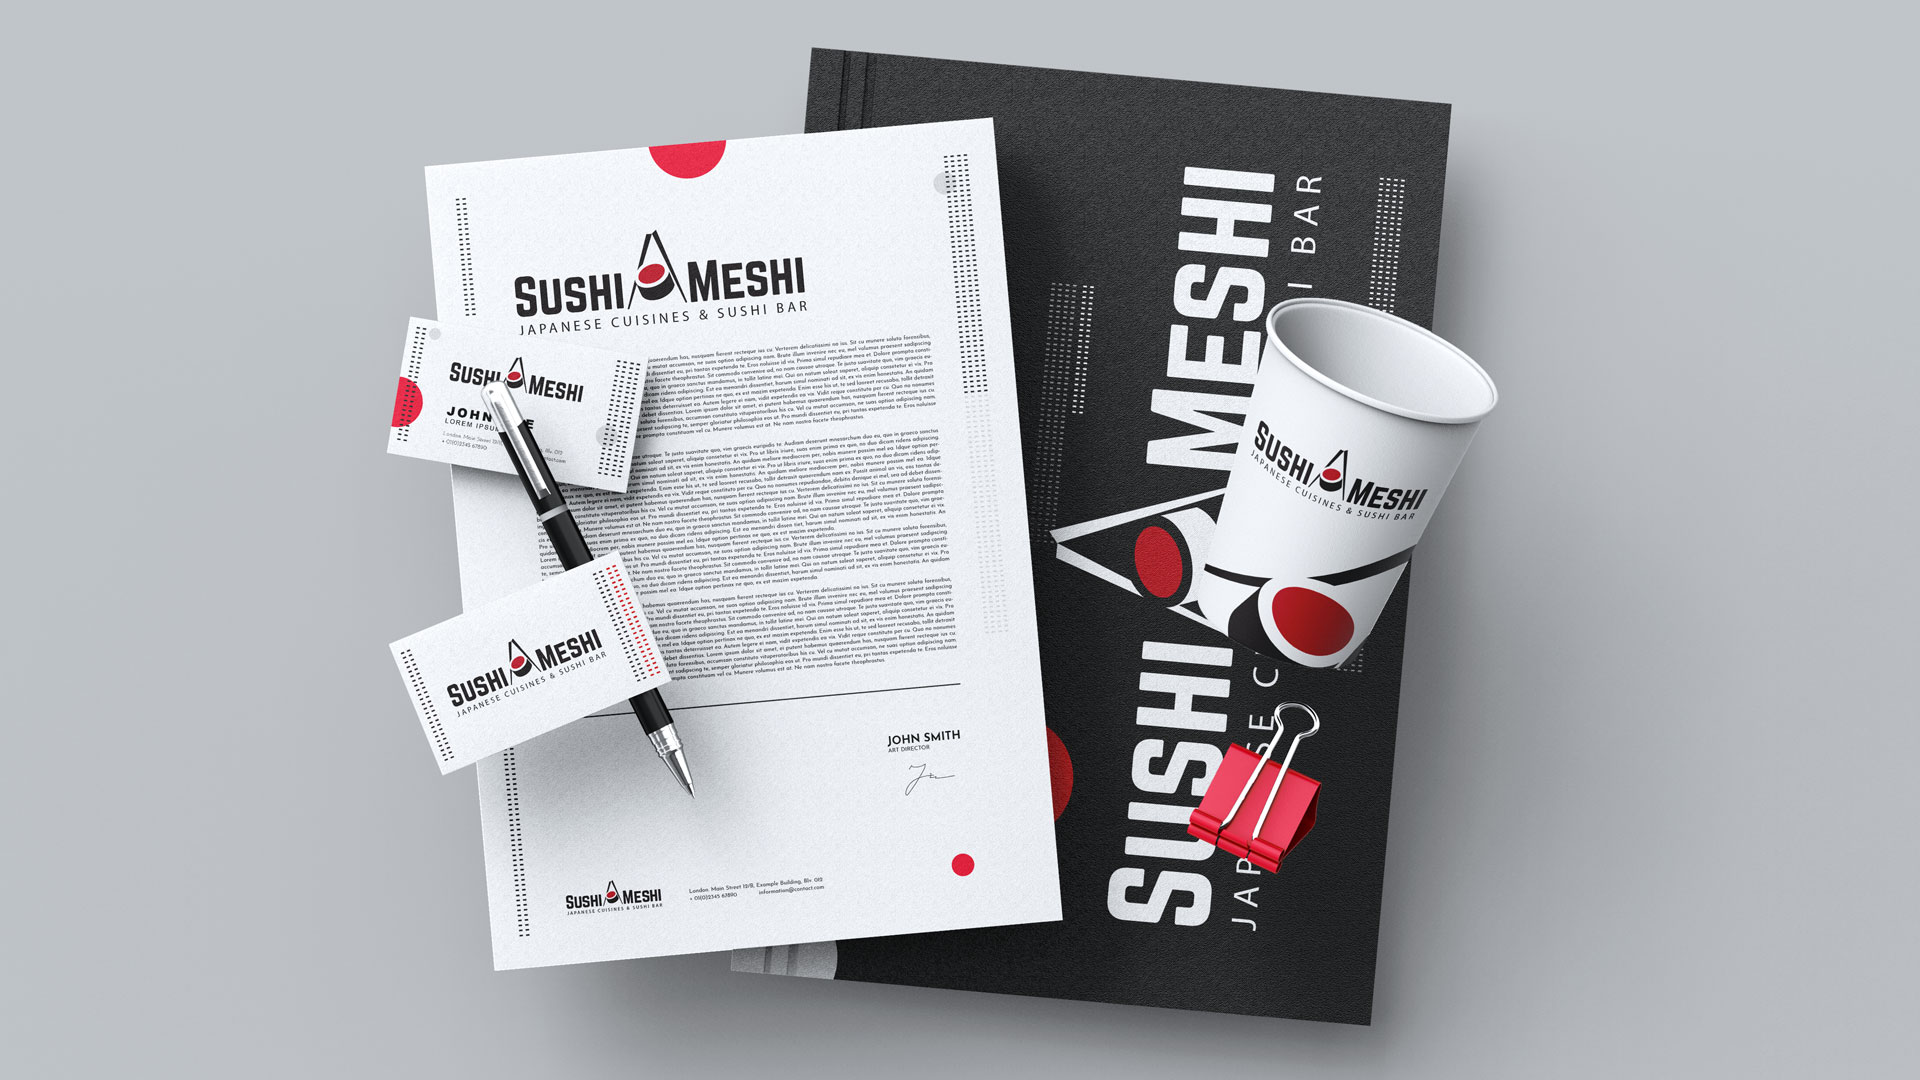 SushiMeshi-brandbook